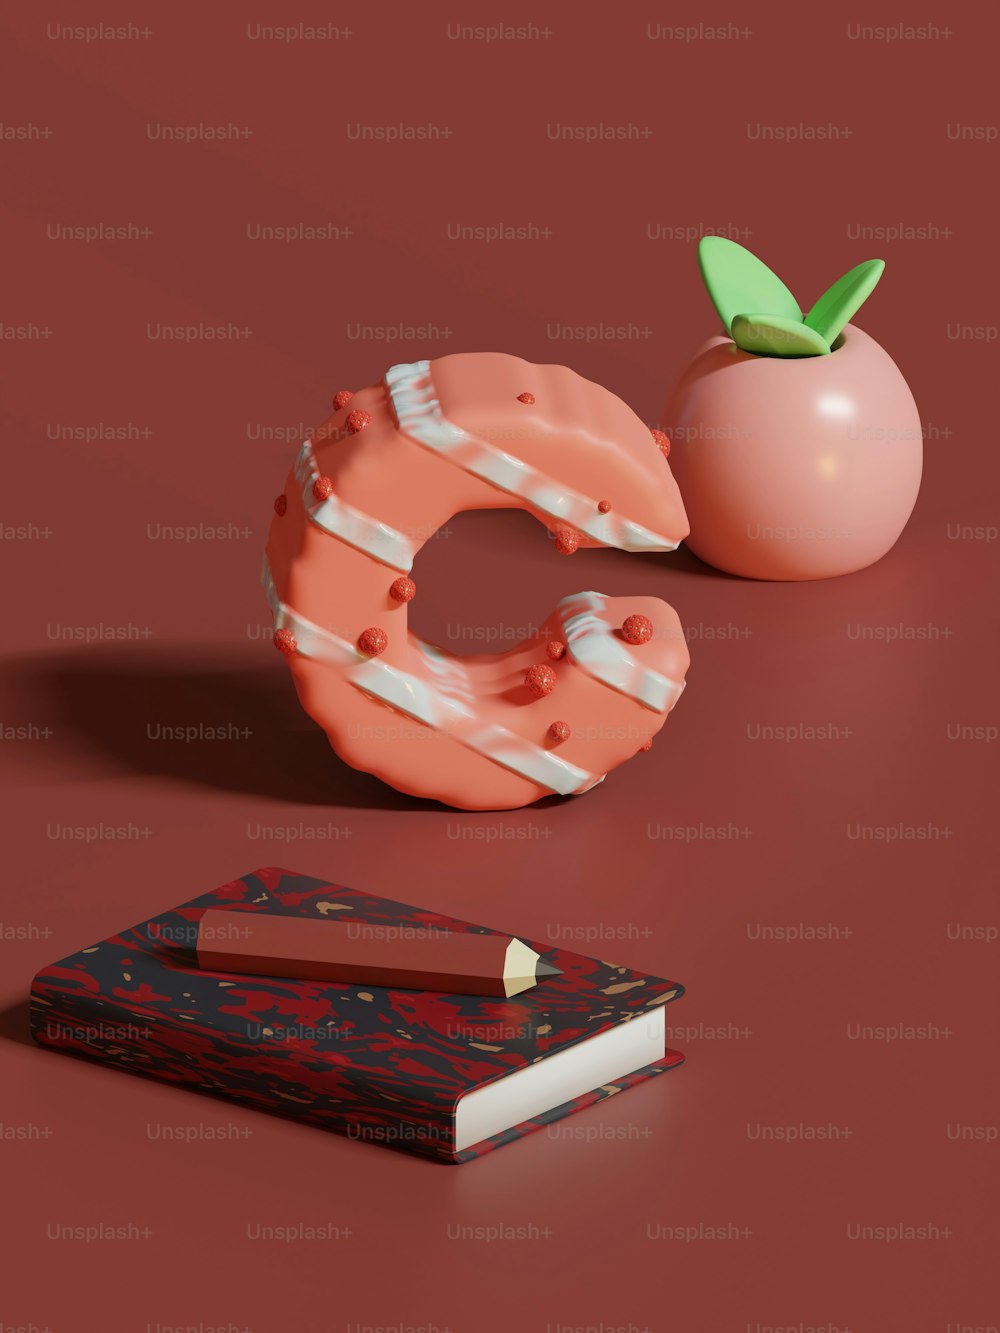 Un livre et un fruit sur une table